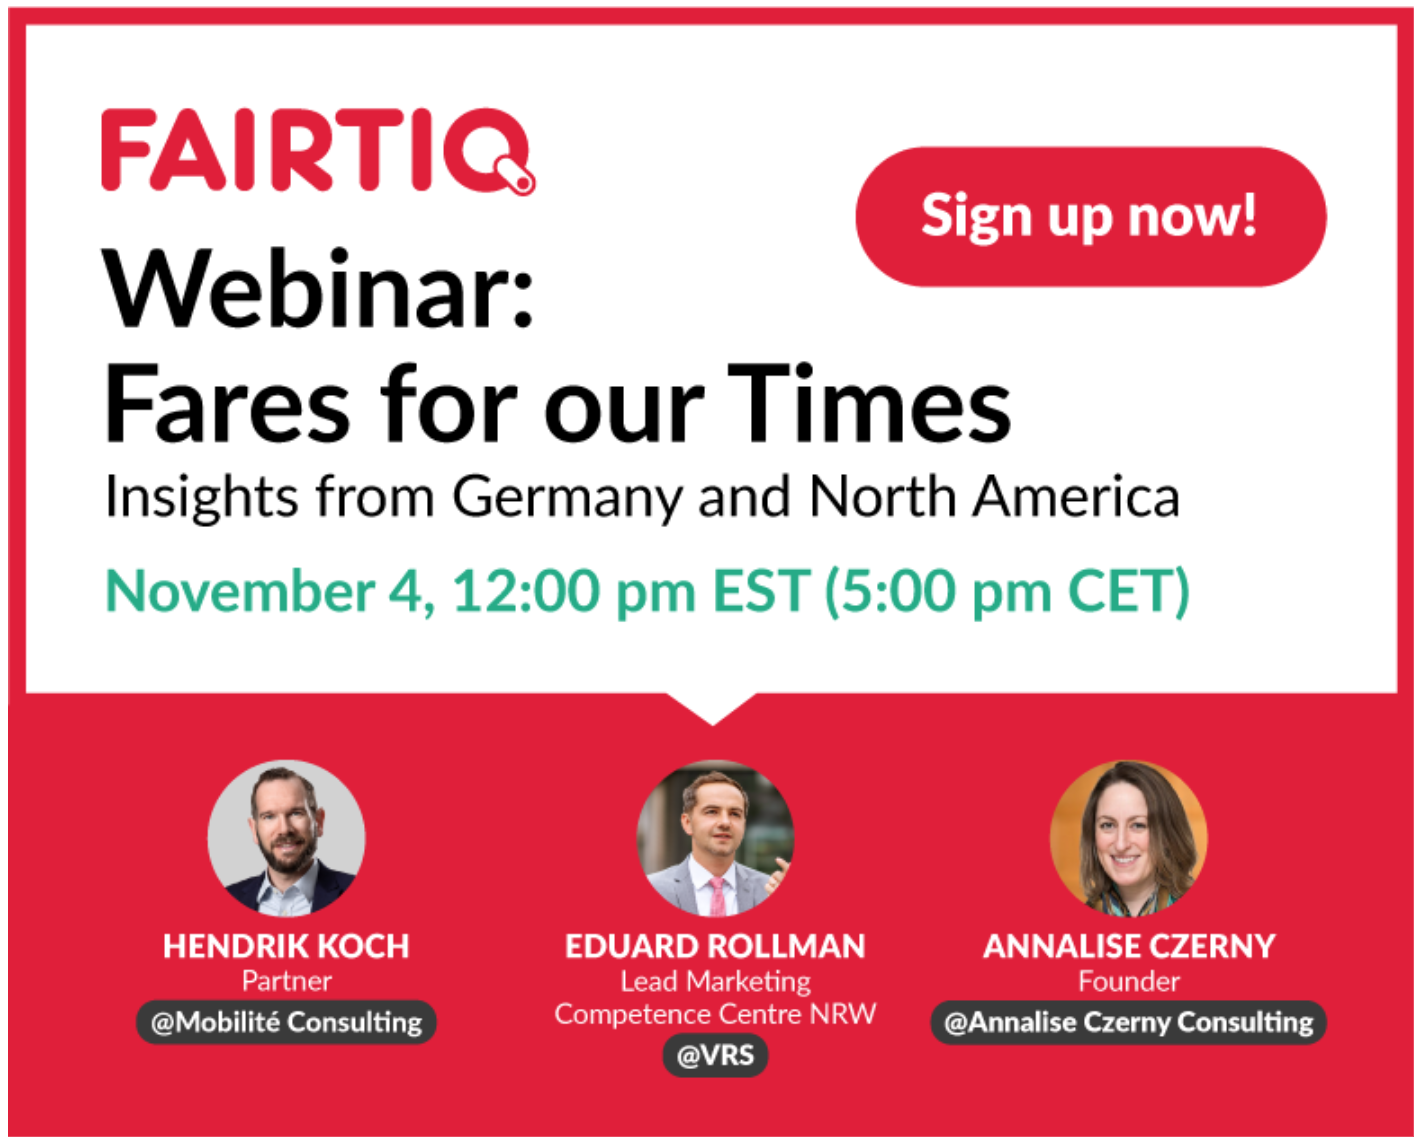 Next webinar: Fares for our Times | FAIRTIQ